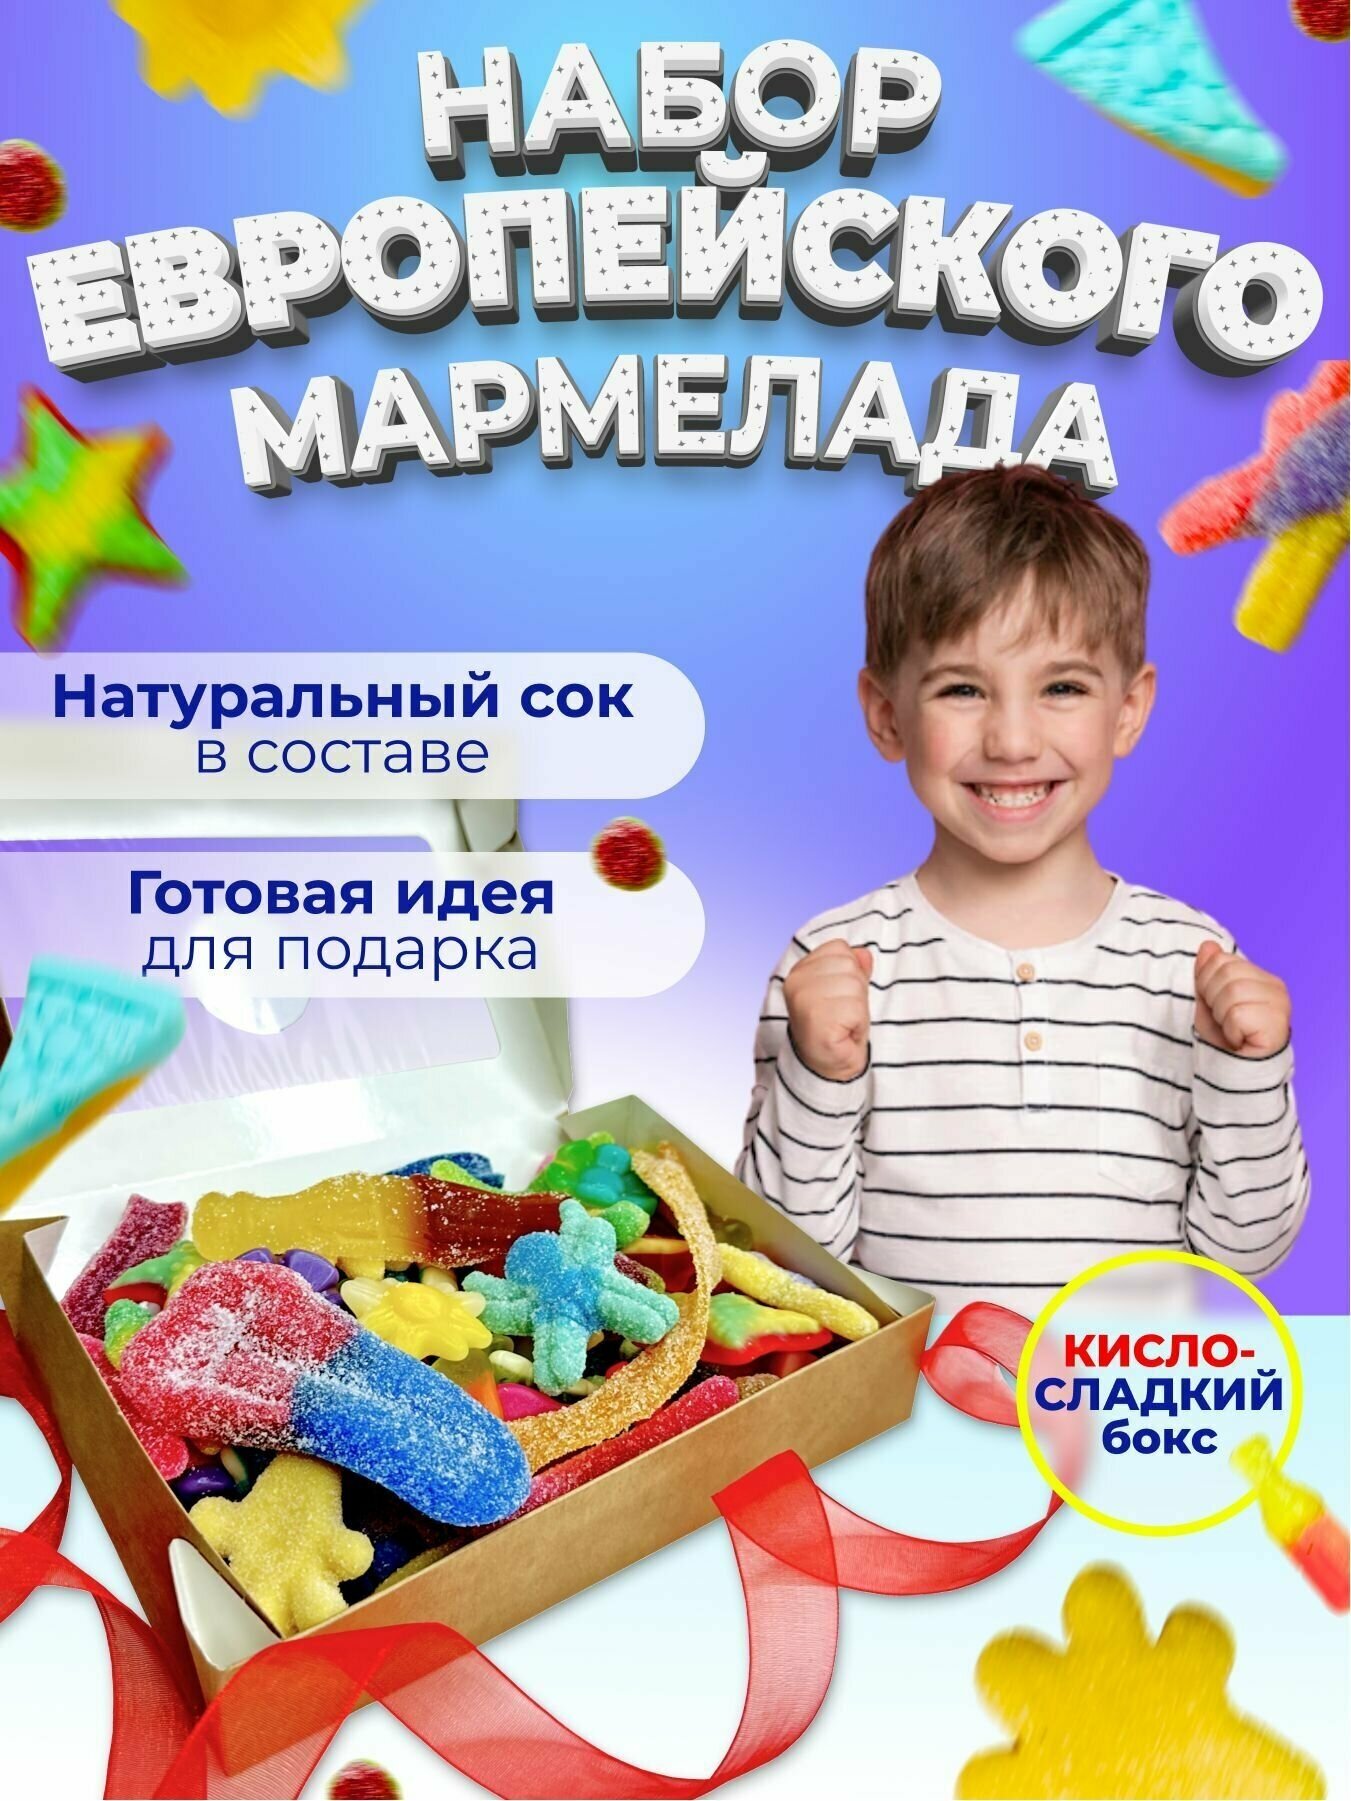 Европейский мармелад жевательный в коробке /Подарочный набор вкусняшек/Сладкий бокс для детей мармелад ассорти кислый и сладкий